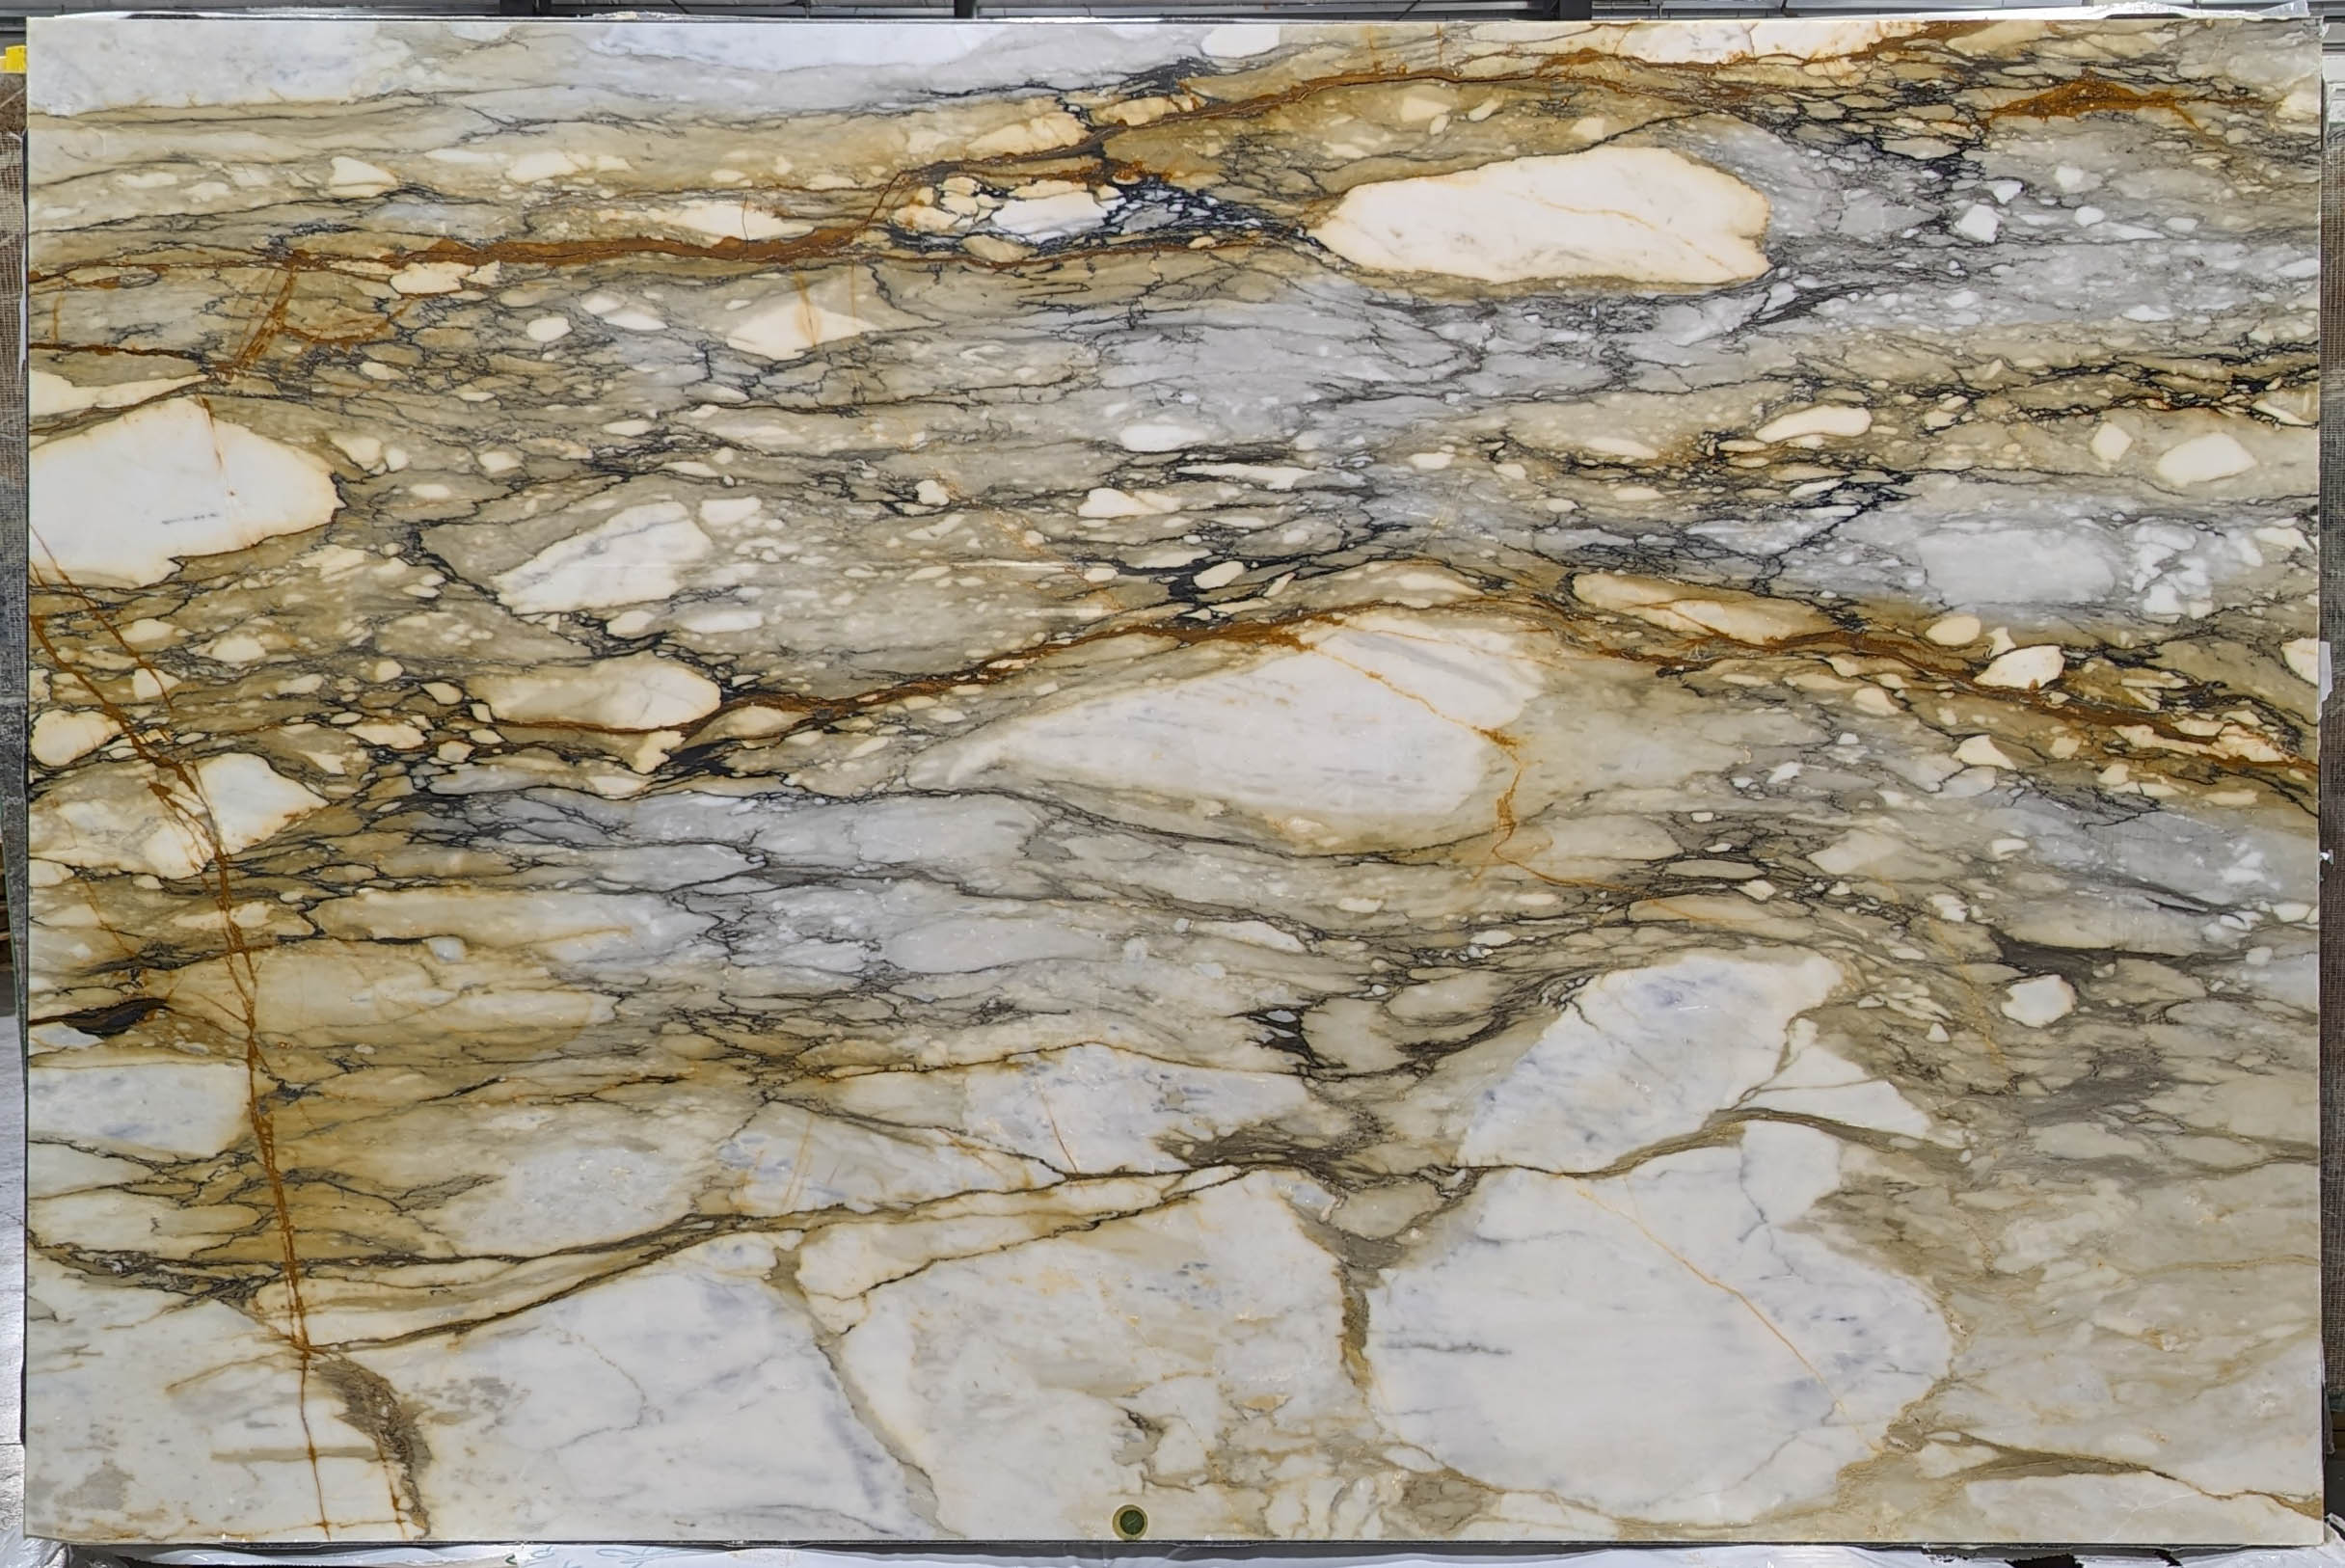  Calacatta Macchia Vecchia Marble Slab 3/4 - 13494#38 -  74X115 